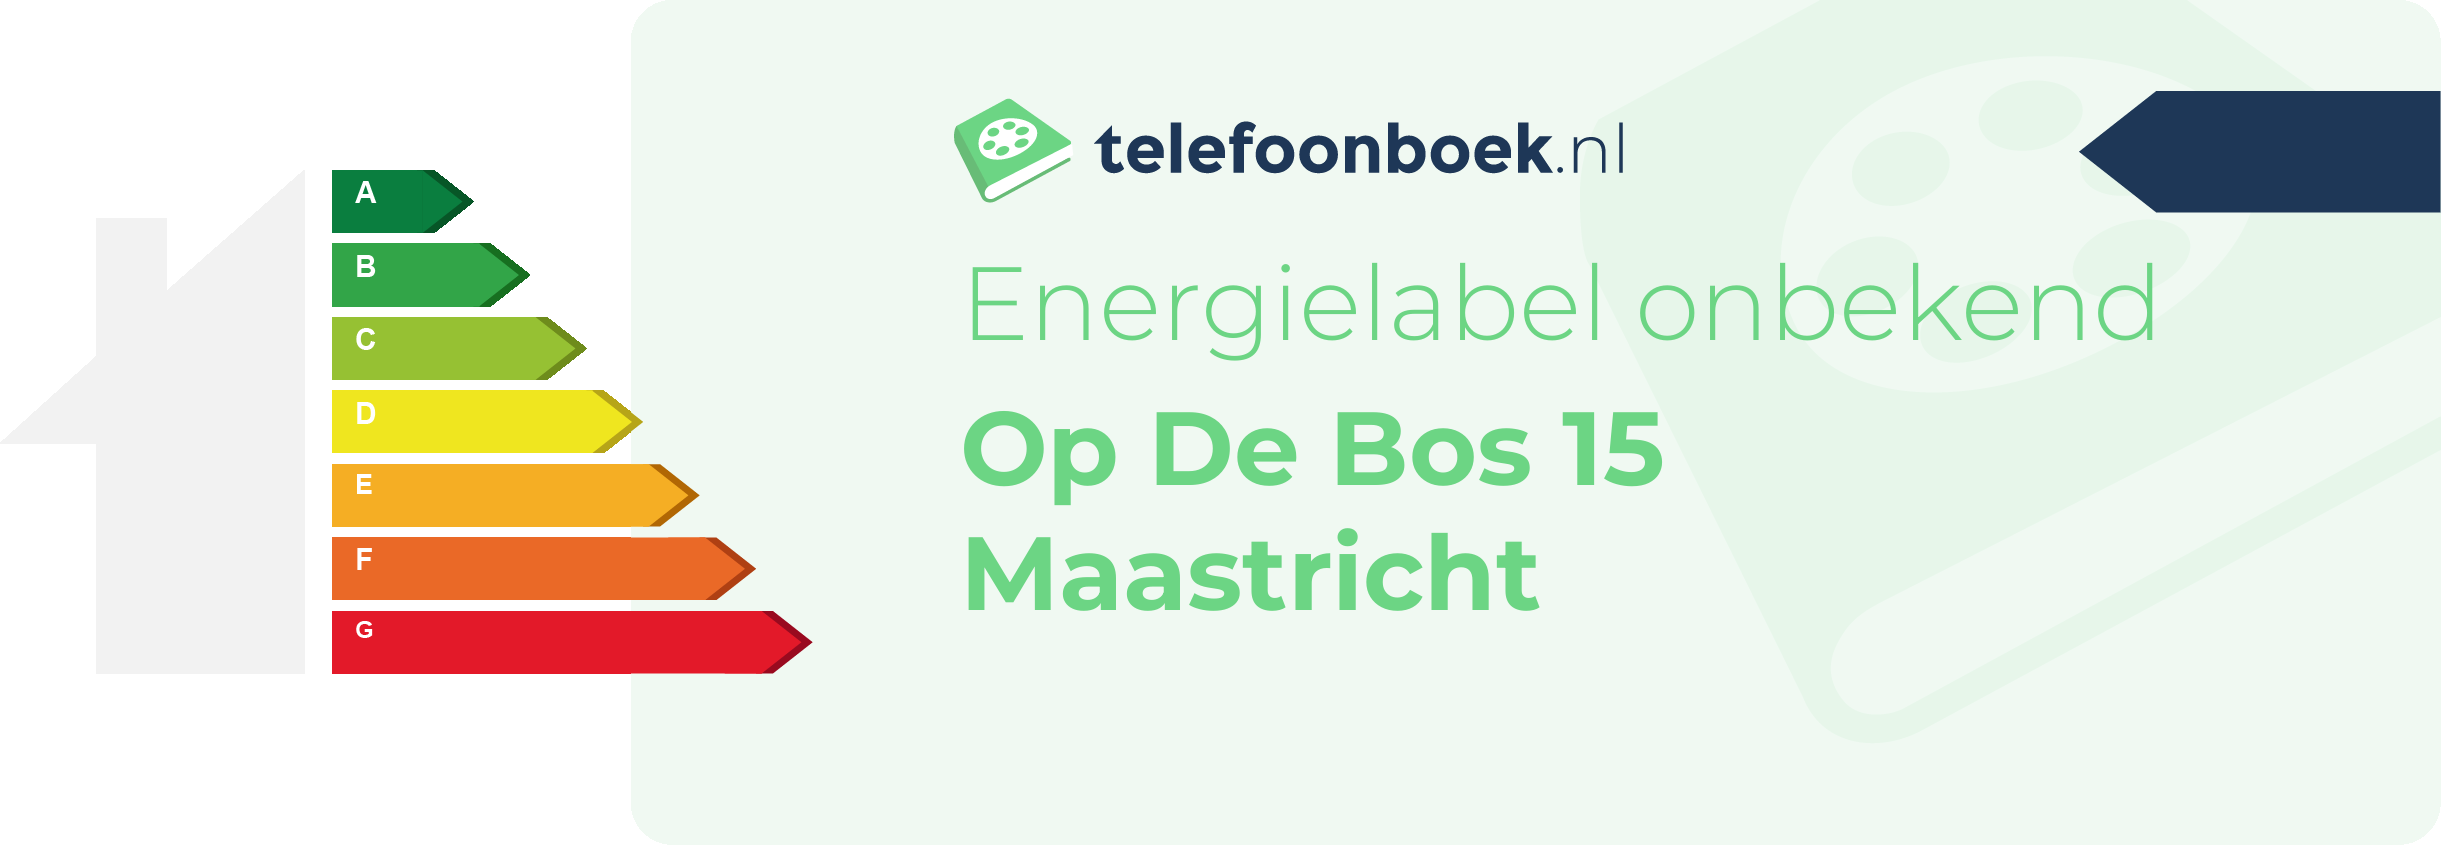 Energielabel Op De Bos 15 Maastricht